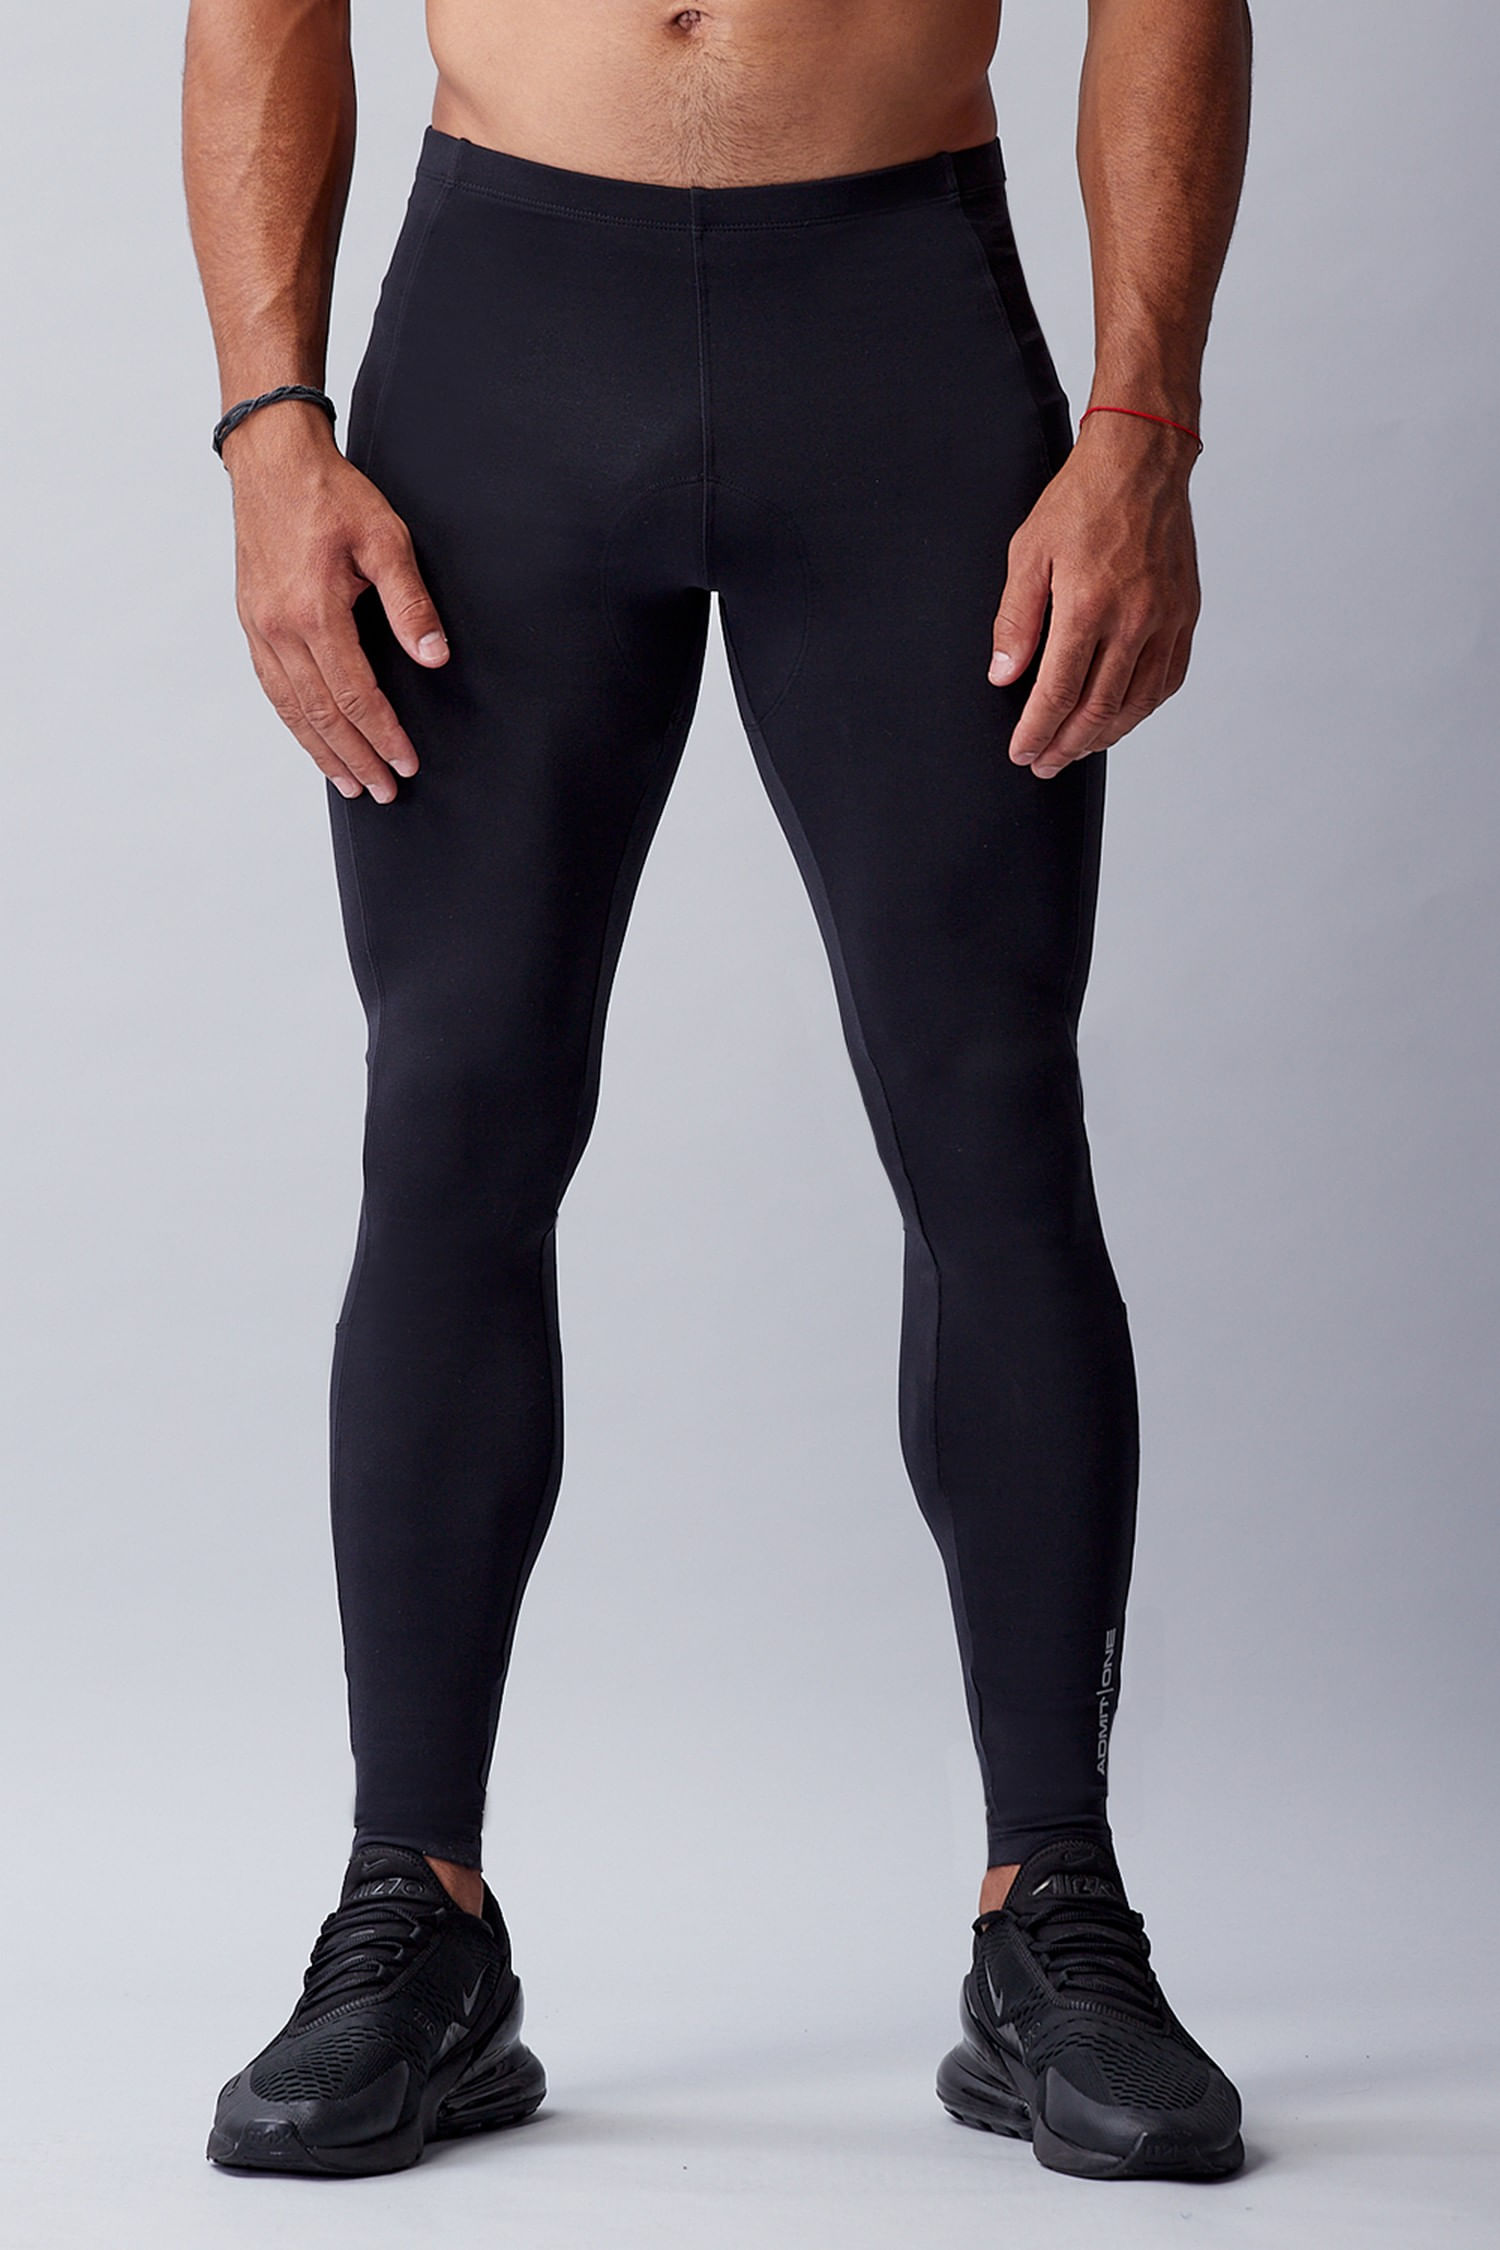 Essentials Men's Stretch Woven Training Pant, Black, Medium